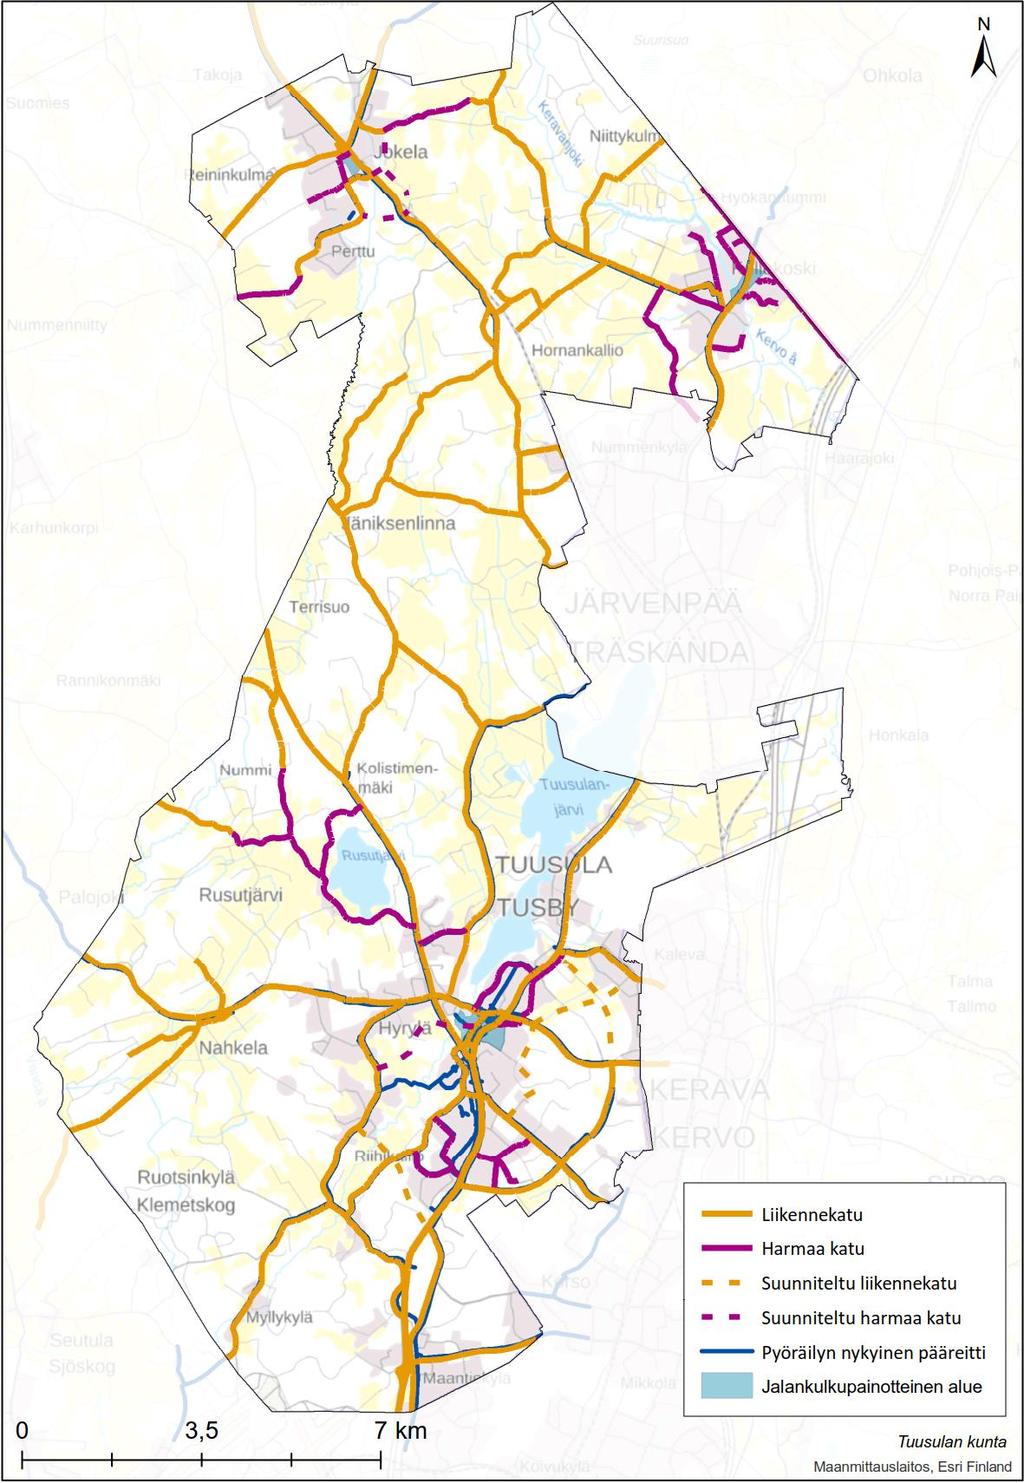 50 (86) 17.4.2018 Tuusulan pyöräliikenteen edistämissuunnitelma pyöräliikenteen tavoiteverkolle, joka on kuvattu seuraavassa luvussa.